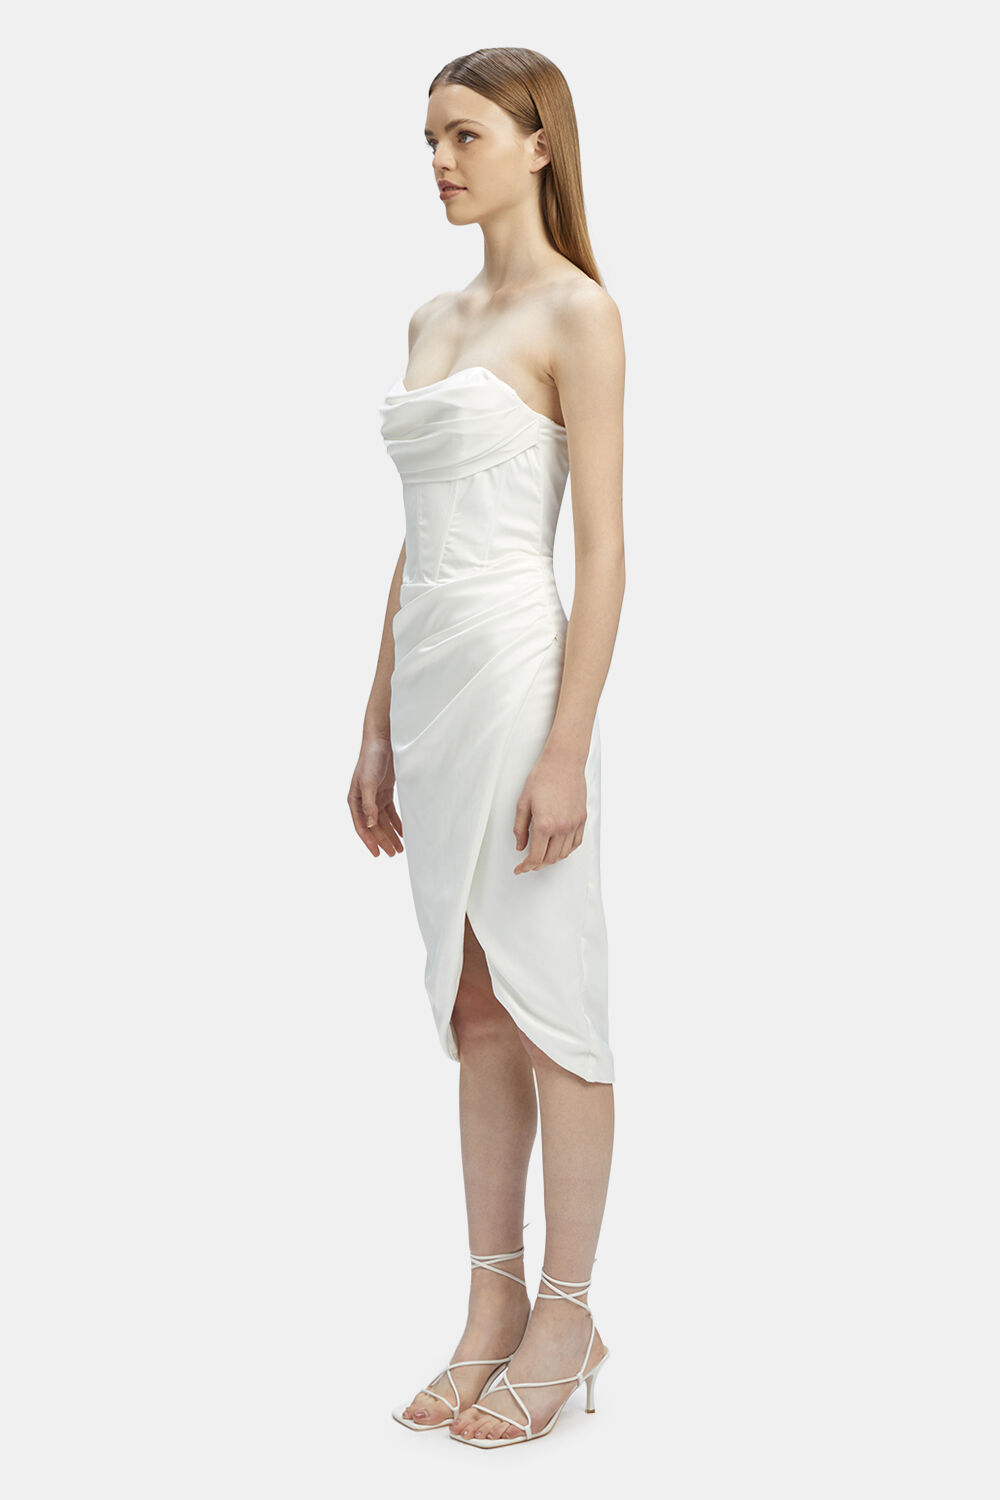 JAMILA CORSET DRESS in colour BRIGHT WHITE